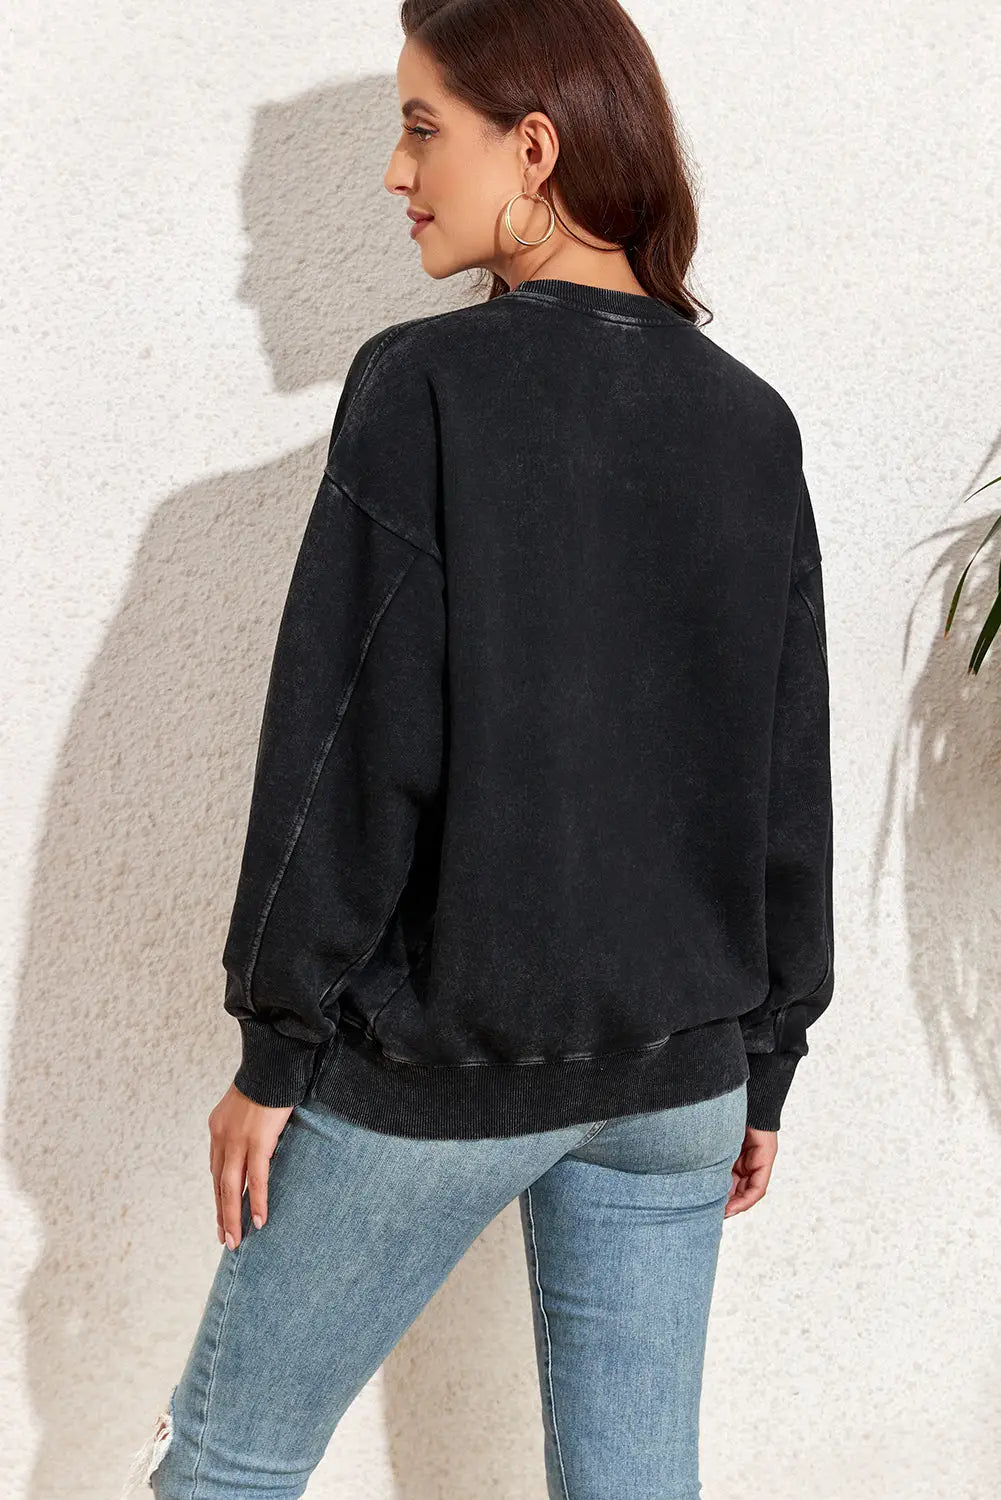 Black vintage wash pocketed round neck sweatshirt - tops